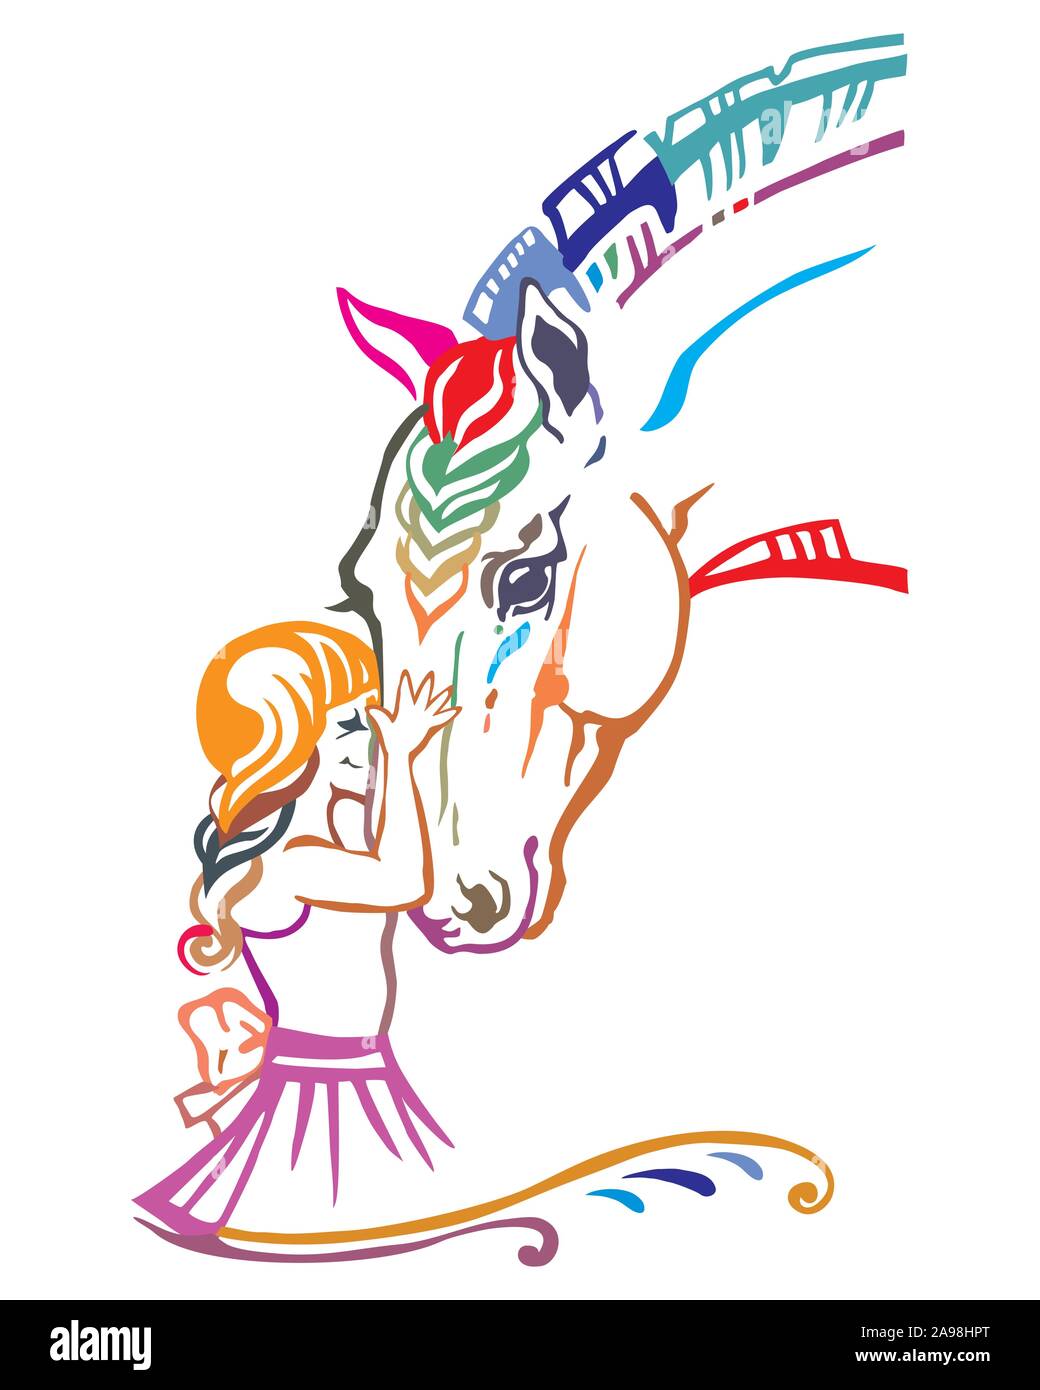 Mädchen umarmen Pferdekopf, bunt dekorativ Portrait im Profil von Mädchen und Pferd, Vektor isoliert Abbildung in verschiedenen Farben auf weißem backgro Stock Vektor